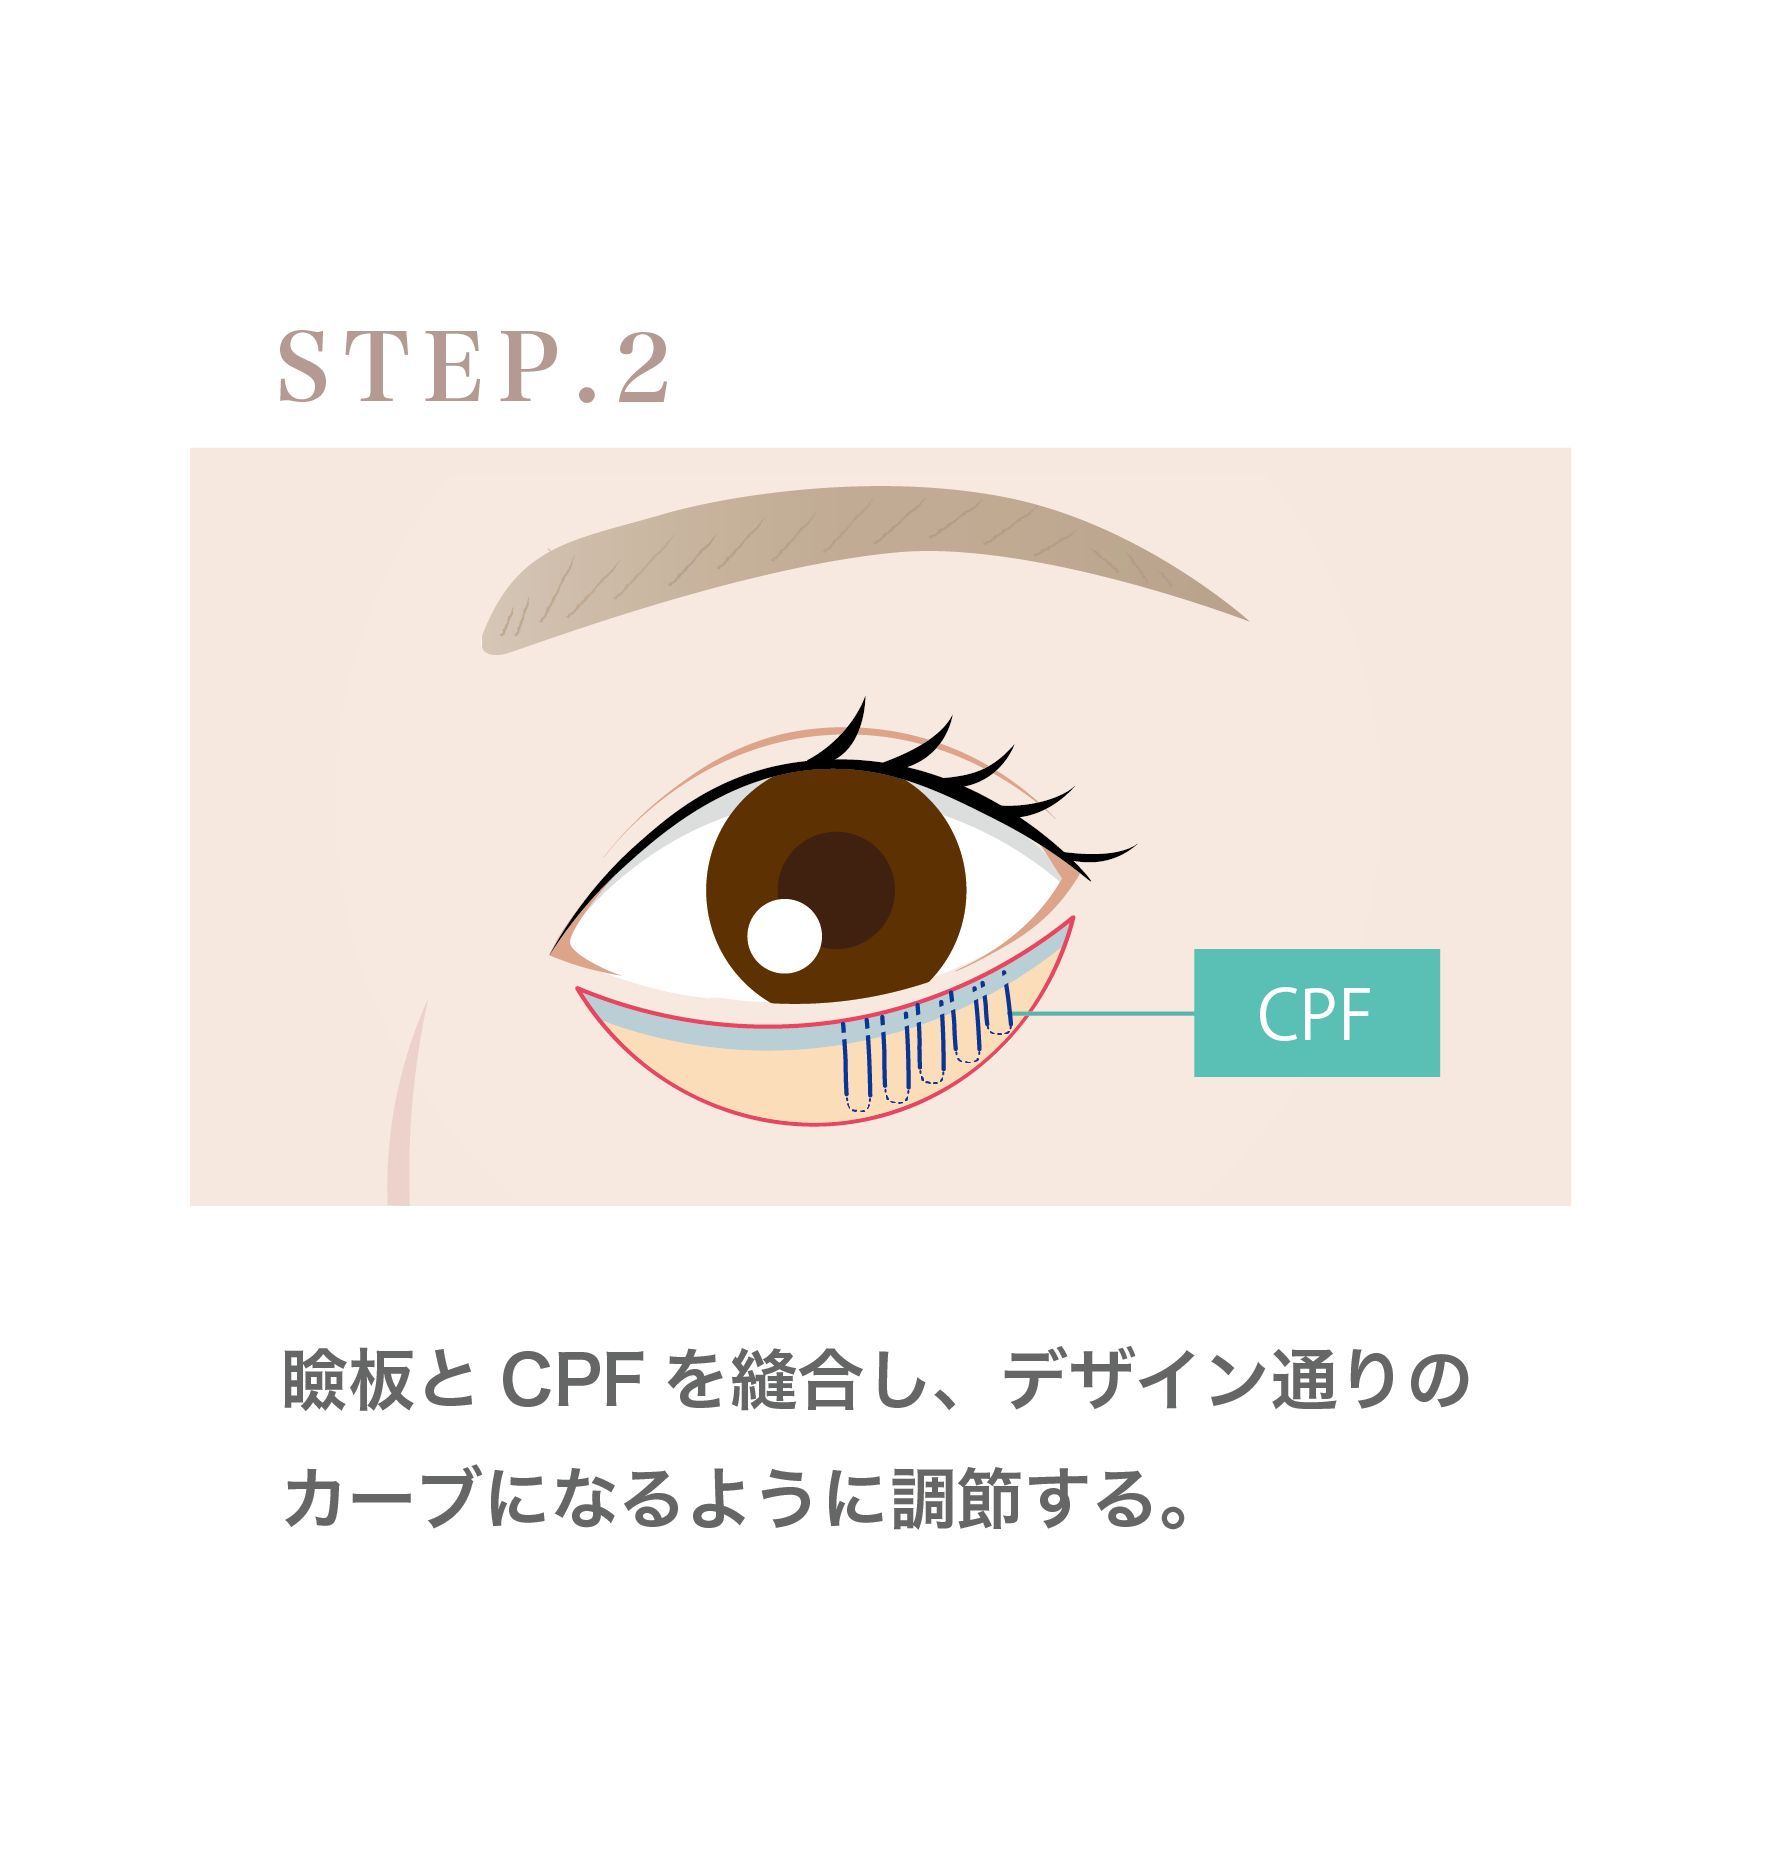 『直後からカラコン使用可能!!左右差も調整した下眼瞼下制術 (グラマラス形成) のダウンタイムを解説』の画像